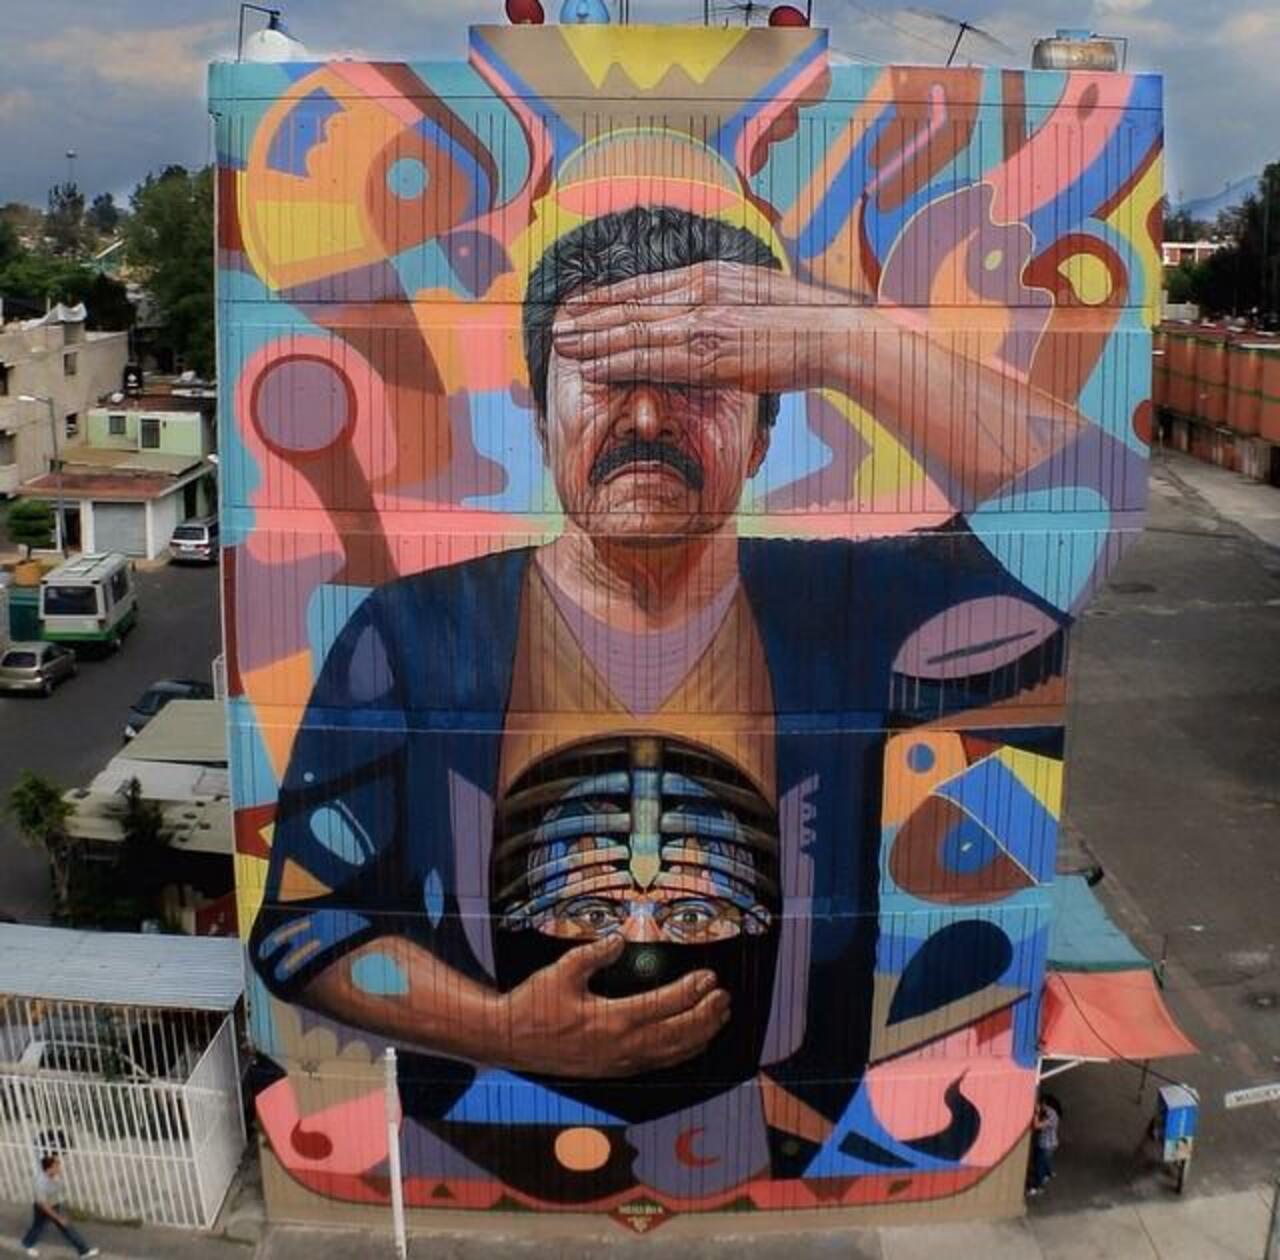 RT "@GoogleStreetArt: Large scale Street Art by the artist Daniel Cortez 

#art #mural #graffiti #streetart http://t.co/ZBvjh7OR28"